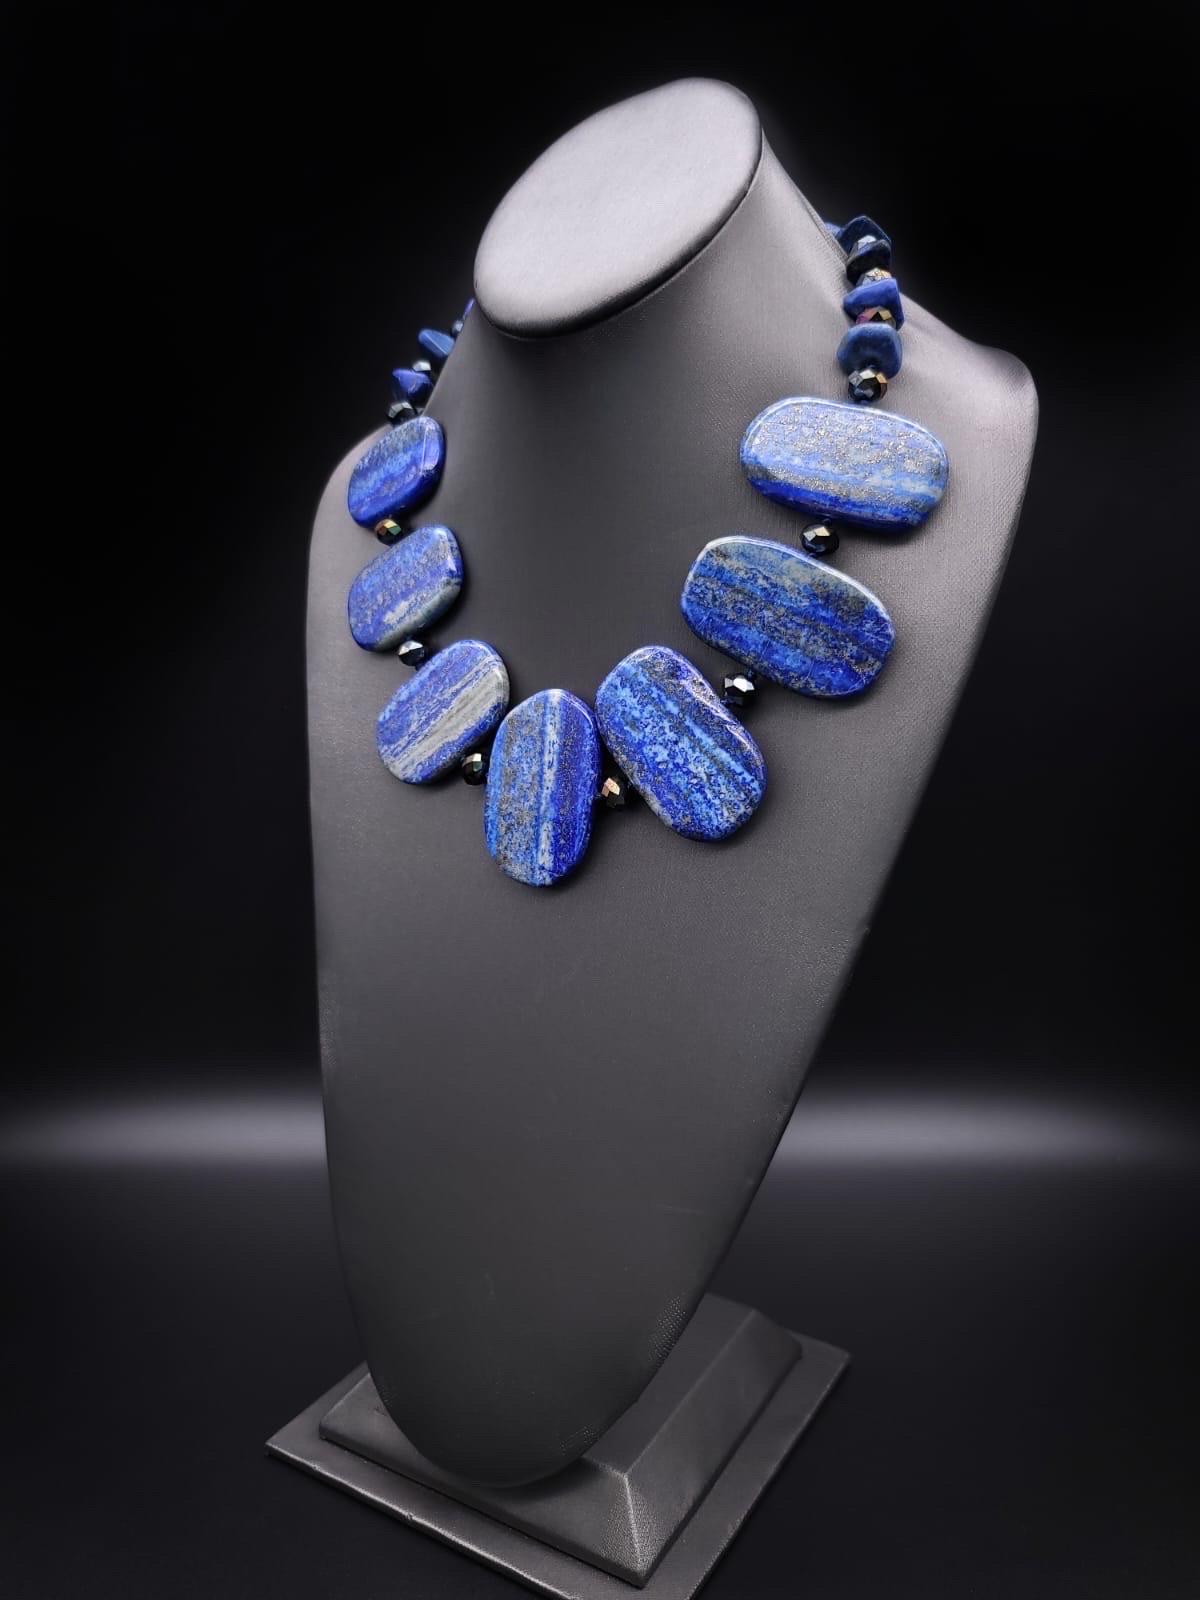 Unique en son genre

Spectaculaire collier en lapis-lazuli provenant des anciennes mines d'Afghanistan  Les plaques sont polies à la main de manière moderne, chacune mesurant approximativement 2'x1'. Elles sont centrées sur un collier de perles de